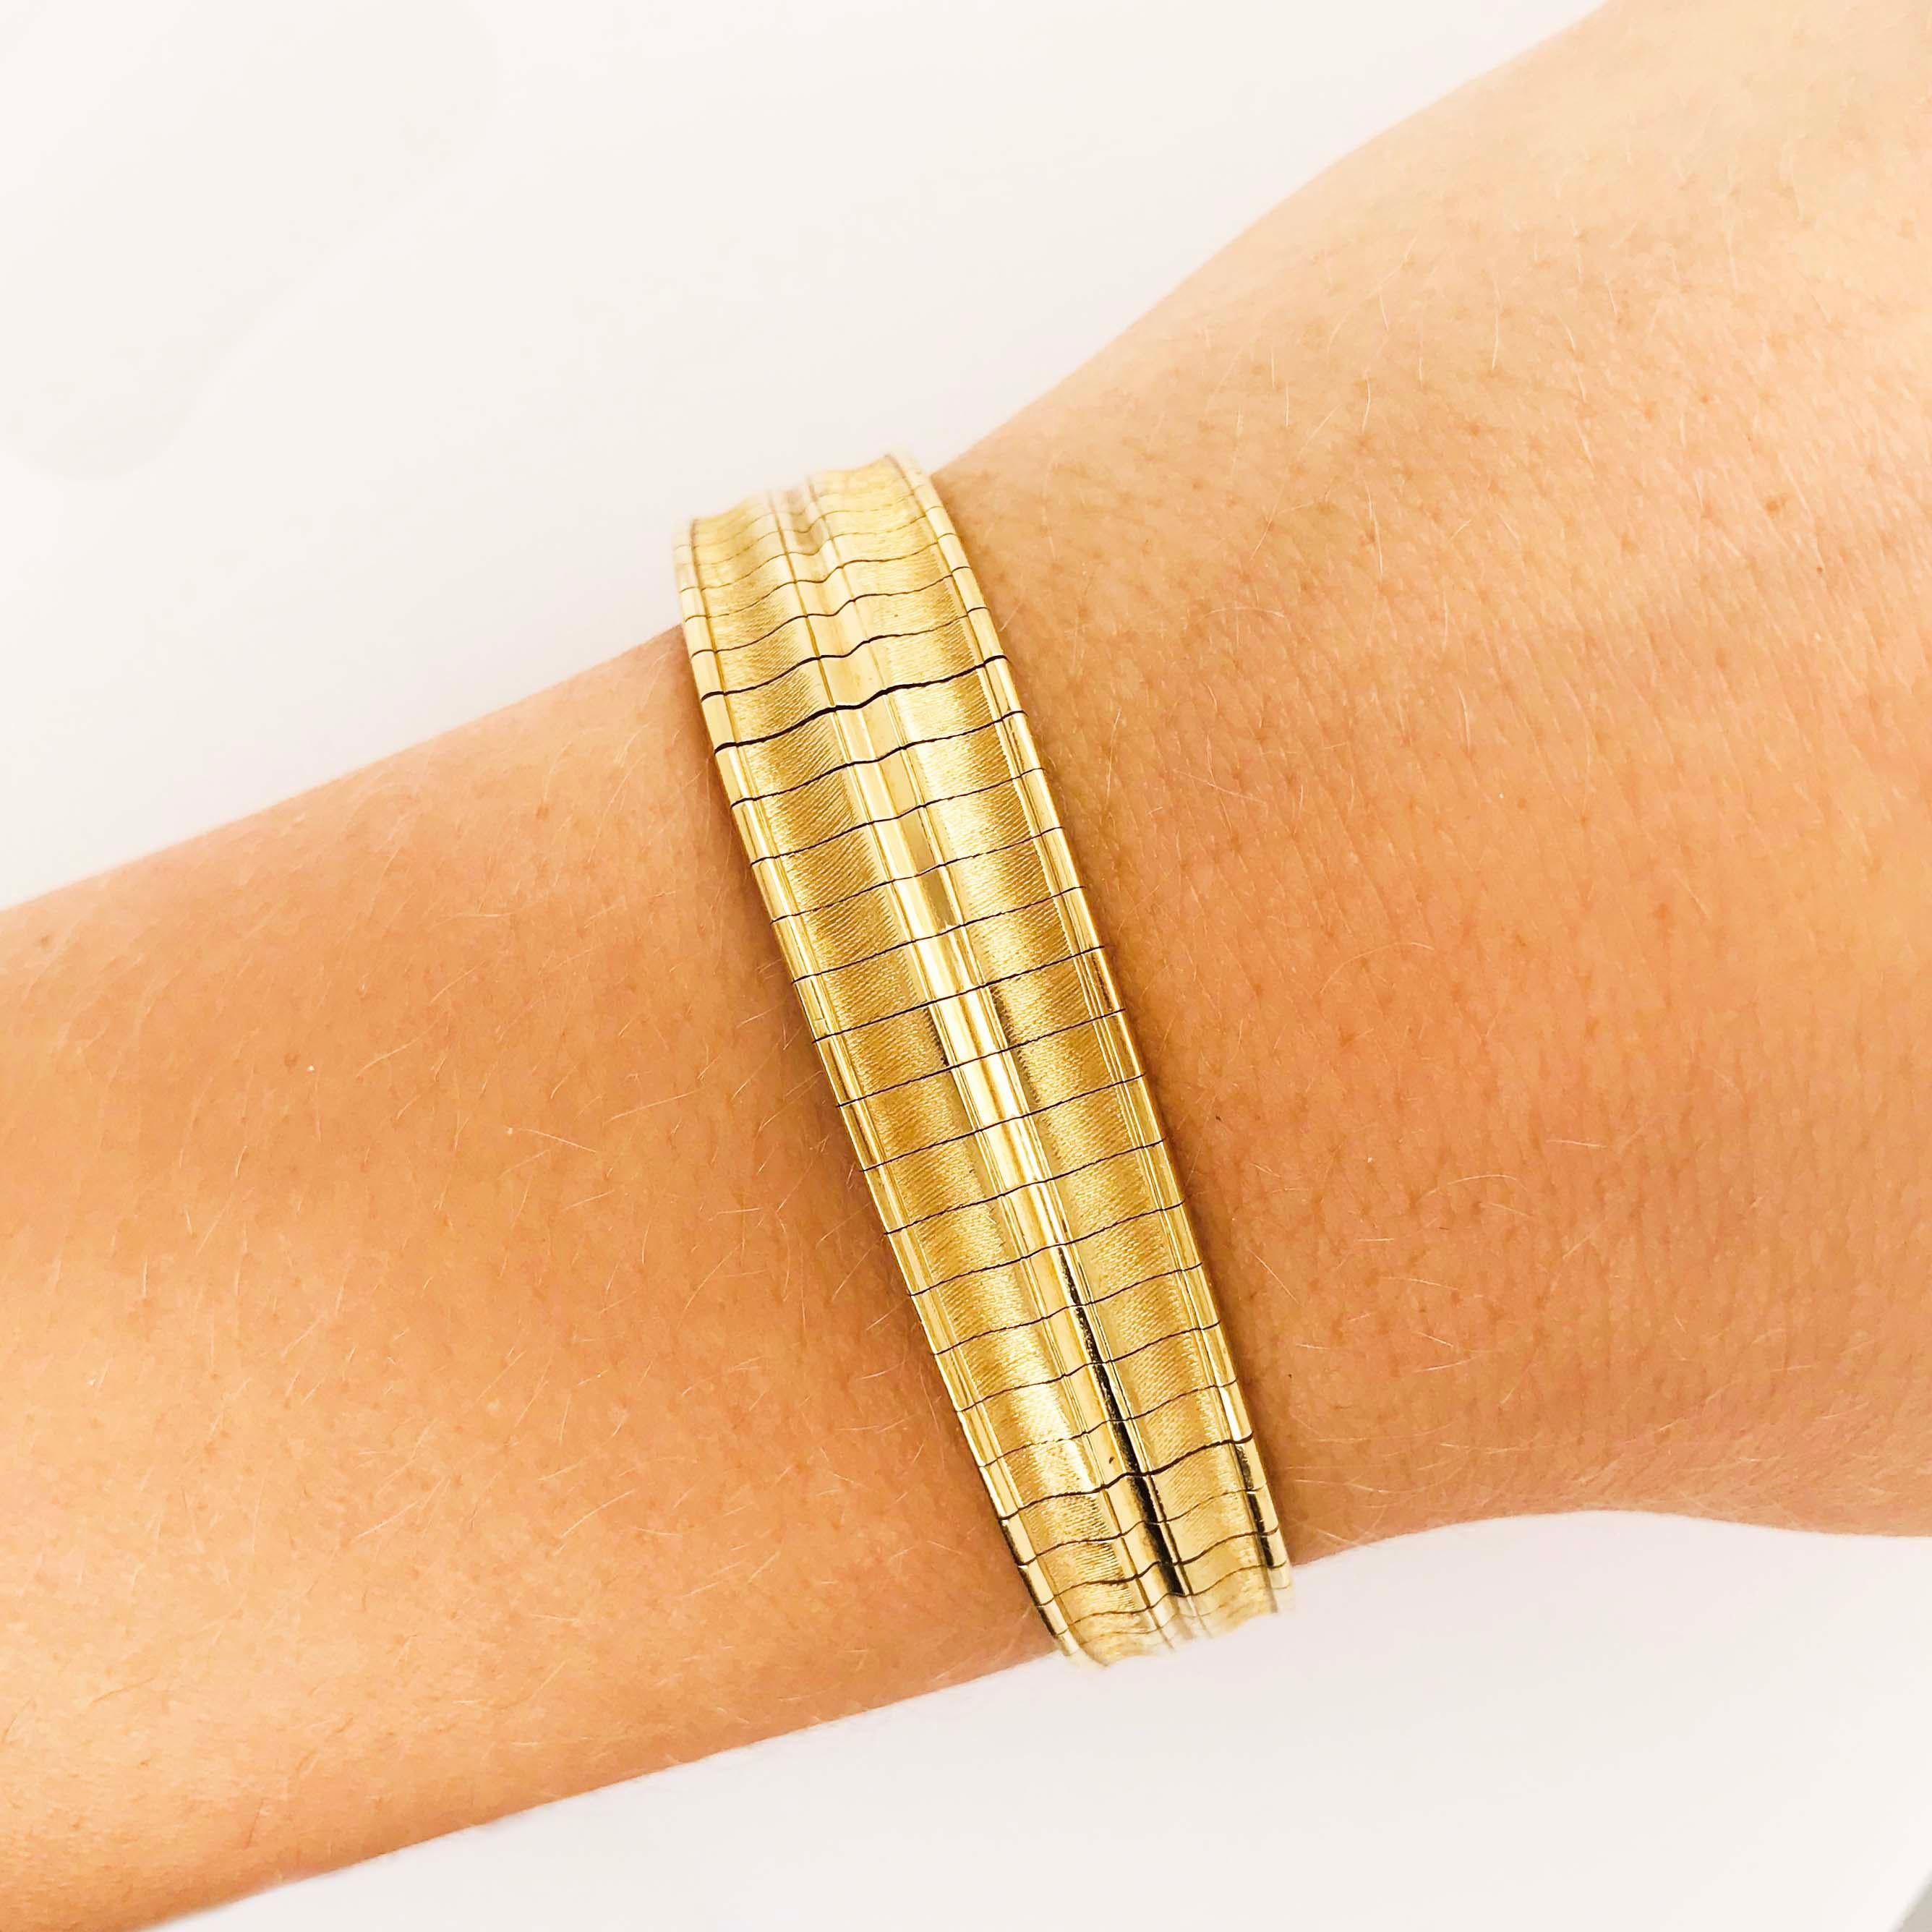 Das 18kt Gelbgold Omega-Armband ist Circa 1995.  In dieser Zeit wurden die Armbänder dicker und stabiler.  Das 18-karätige Gelbgold hat eine sehr satte Gelbgoldfarbe, die auffällig und kräftig ist! Der obere Teil des Armbands ist 12,75 Millimeter